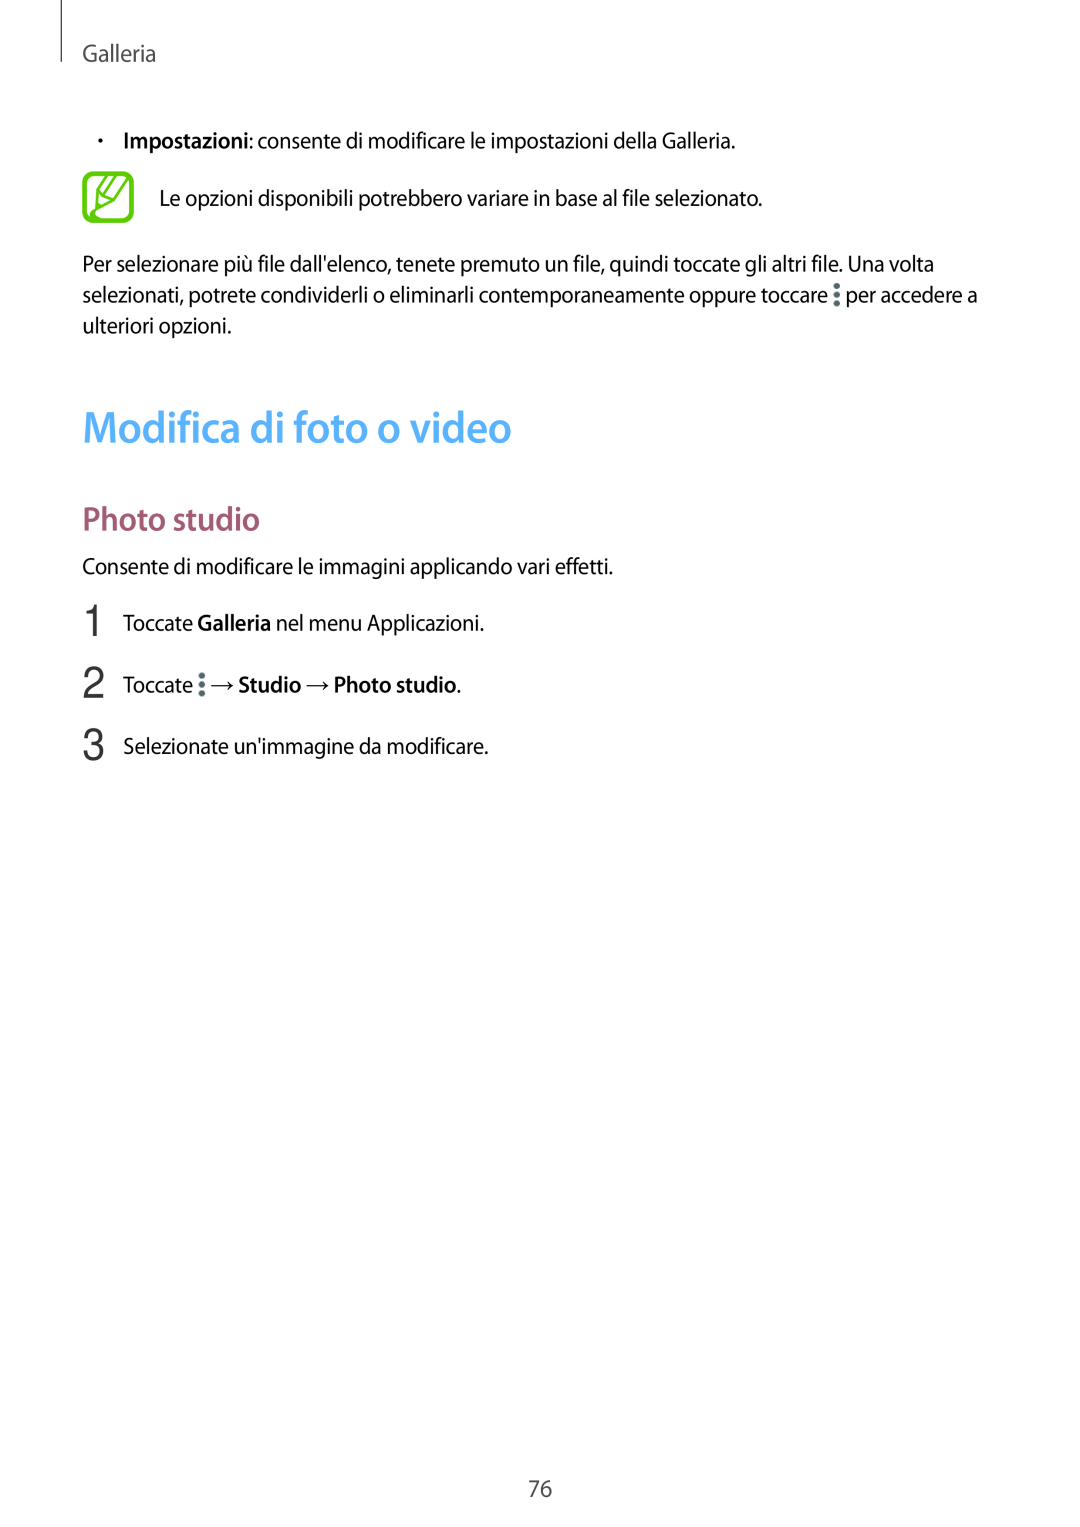 Samsung SM-T700NTSATUR, SM-T700NZWATUR manual Modifica di foto o video, Toccate →Studio →Photo studio, Galleria 